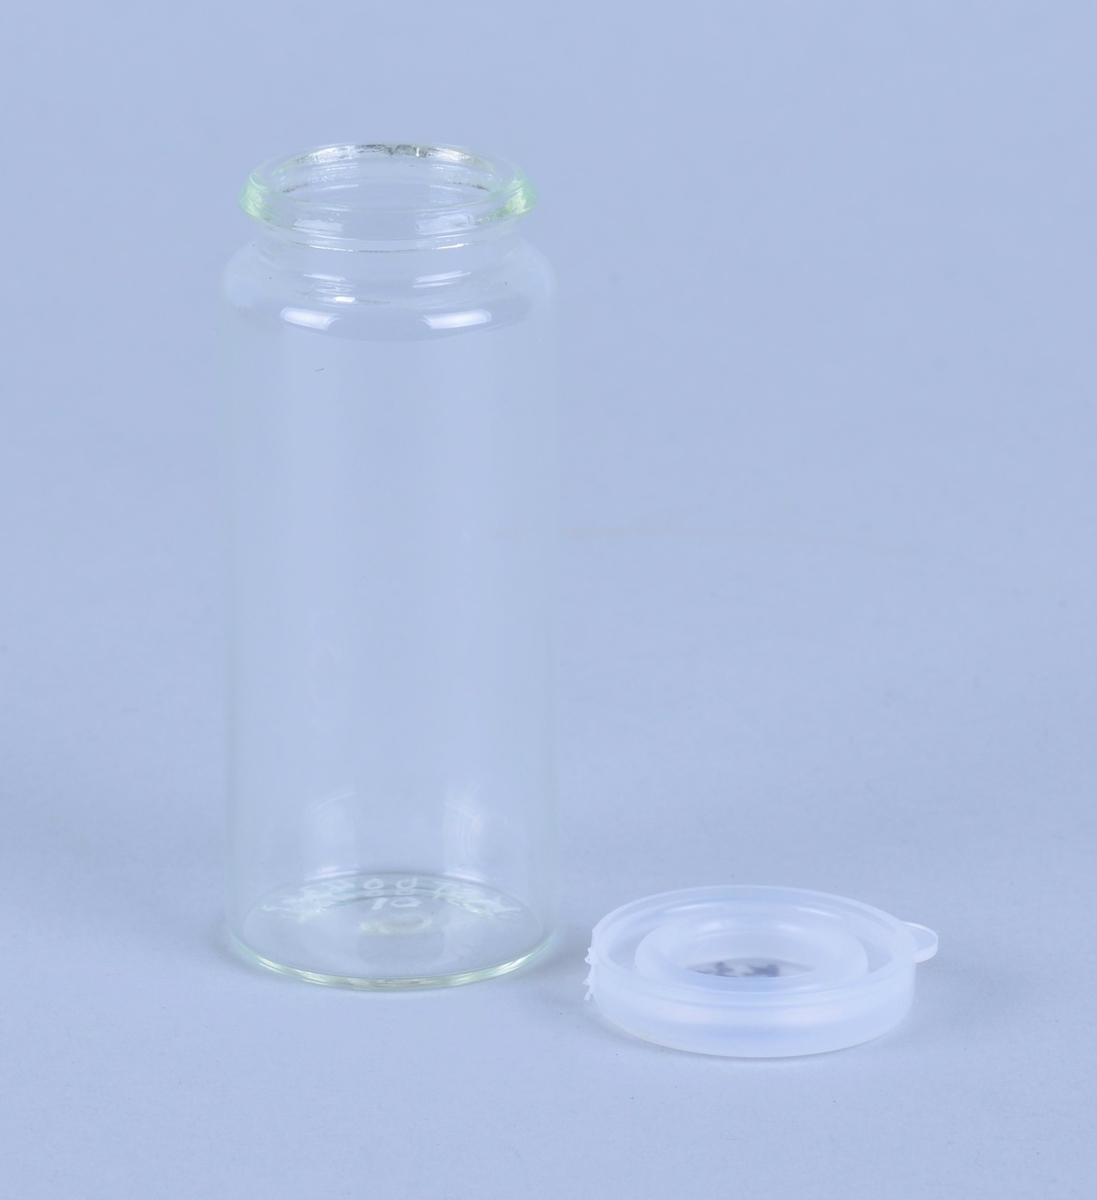 100 små, sylindriske glass med tilhørende plastlokk (130 stk).
Kanskje brukt ved prøvetaking eller oppbevaring av prøver.
Oppbevart i en pappeske